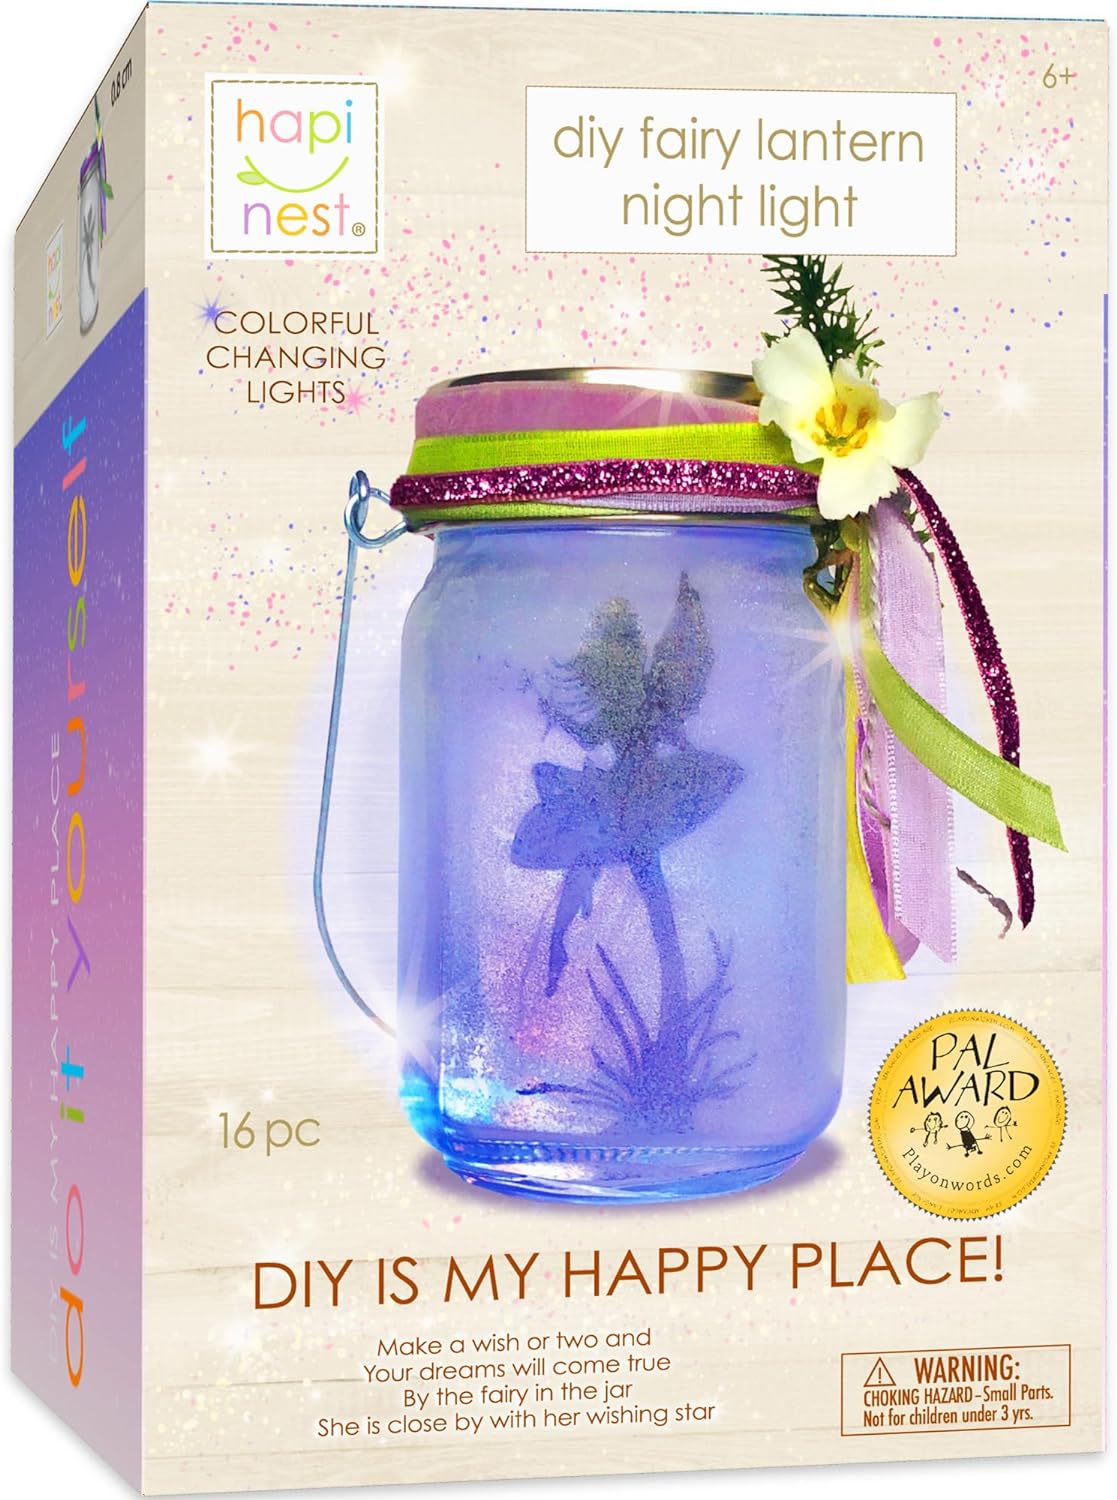 DIY Fairy Lantern Night Light Kit